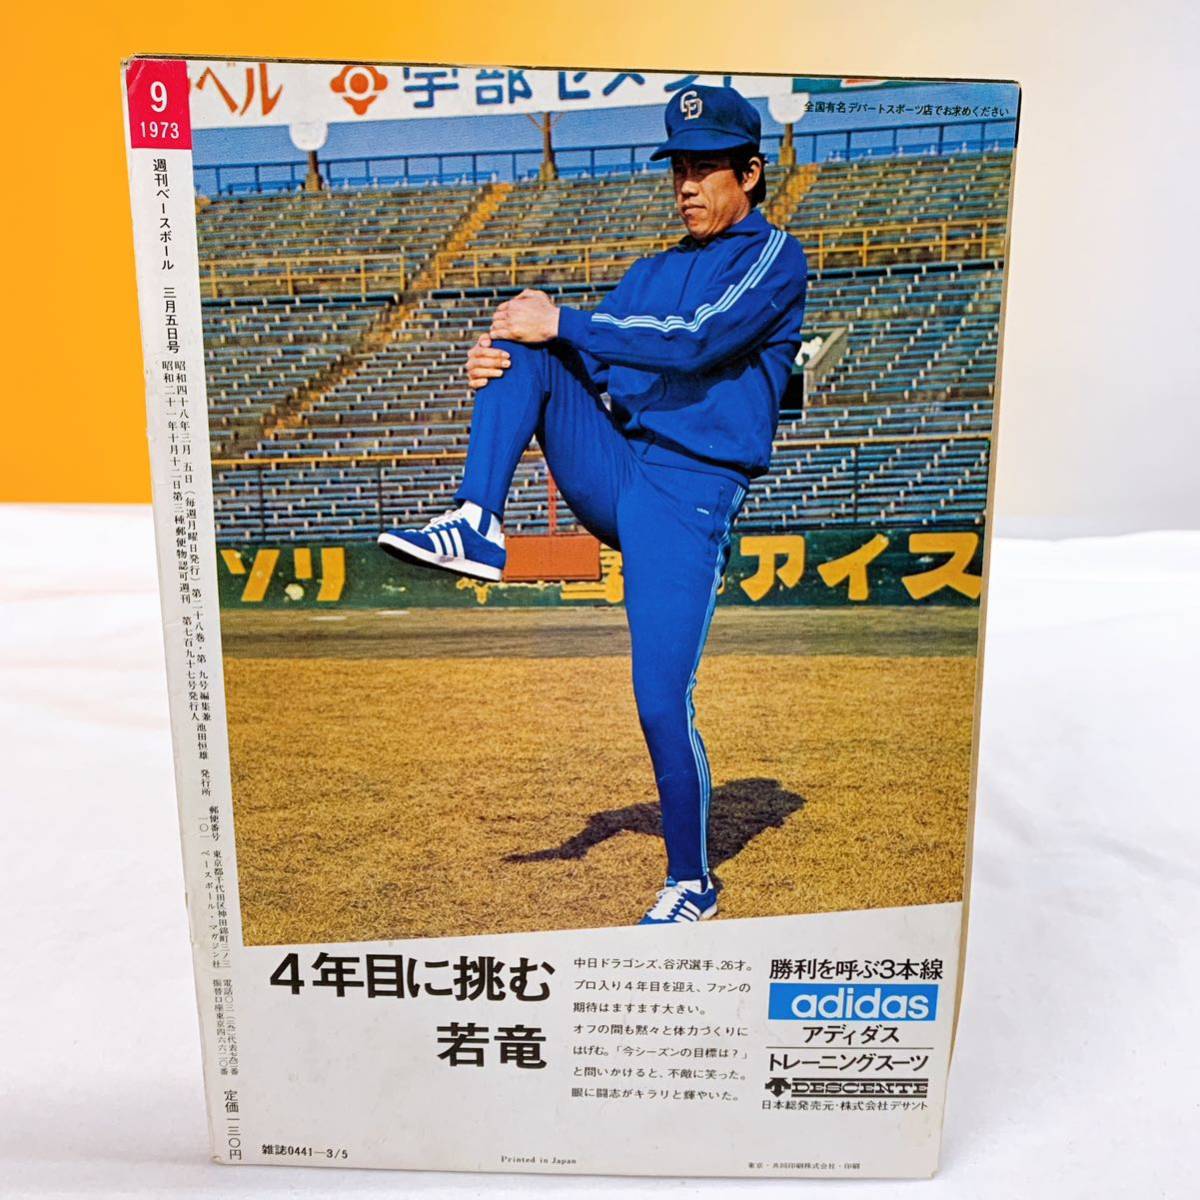 K5-T12/23 週刊ベースボール 3月5日 '73 プロ野球選手写真名鑑_画像2